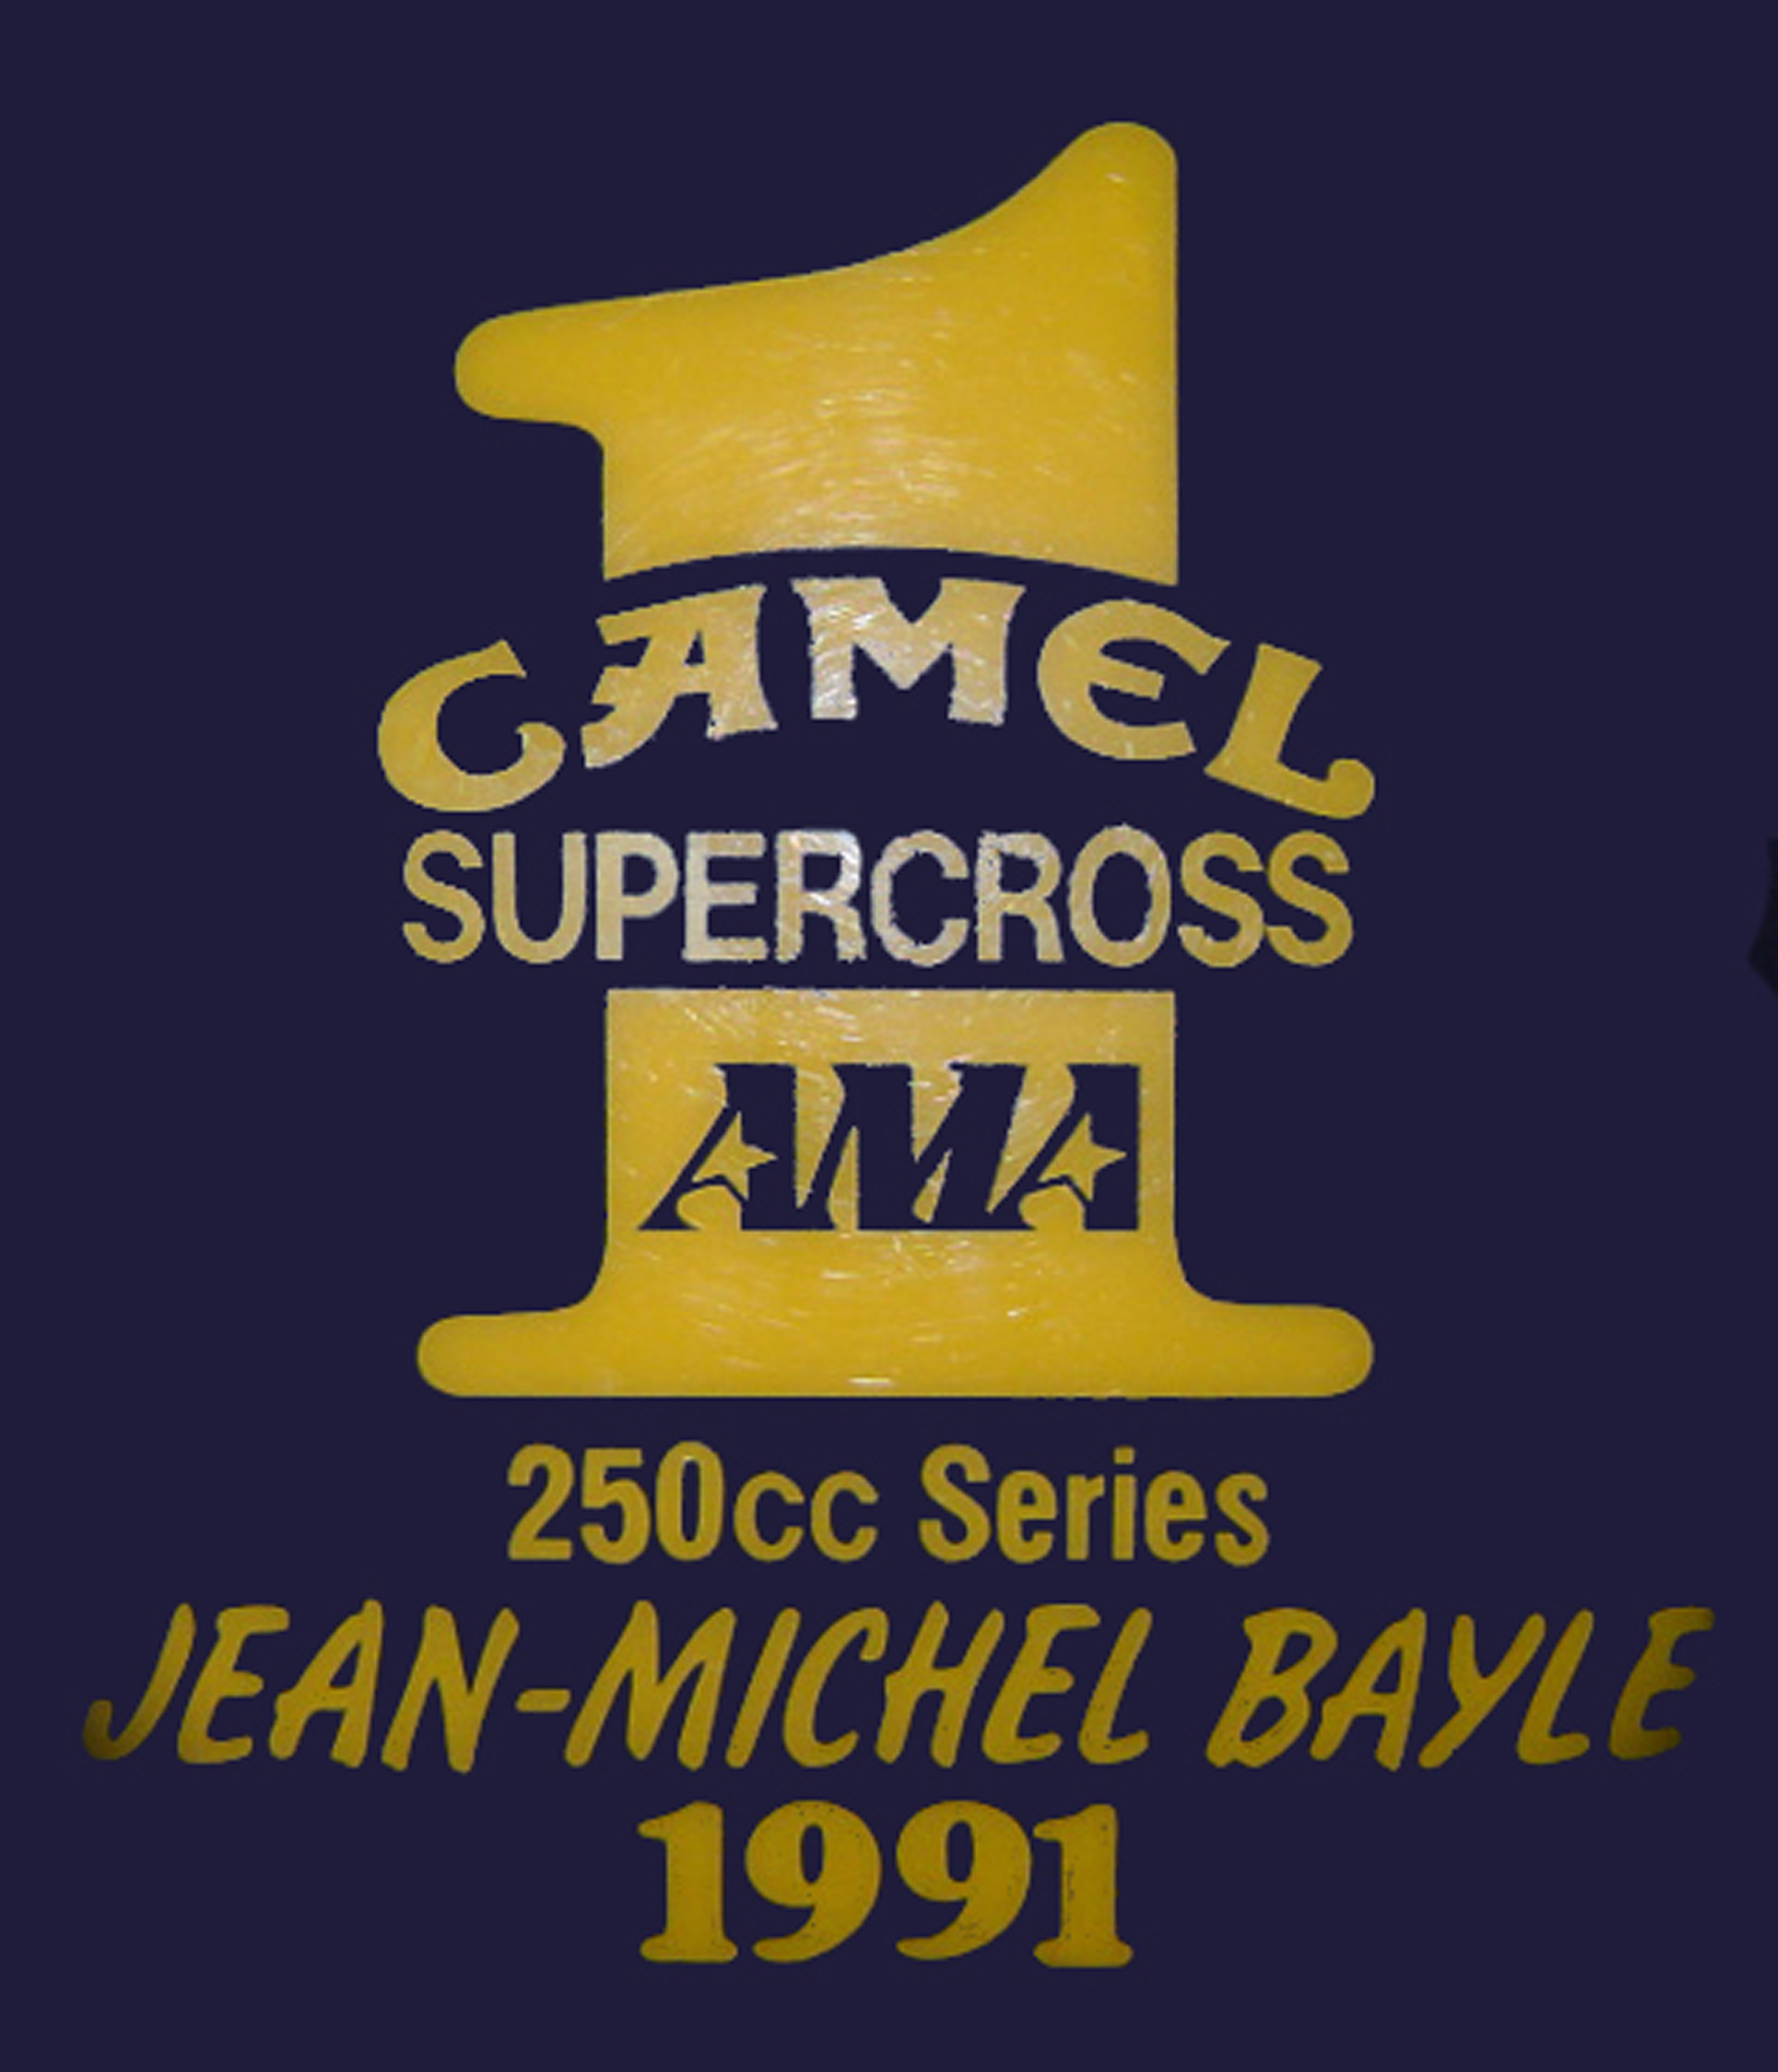 La plaque de numéro 1 de supercross US de Jean-Michel Bayle suite à l'obtention du titre en 1991